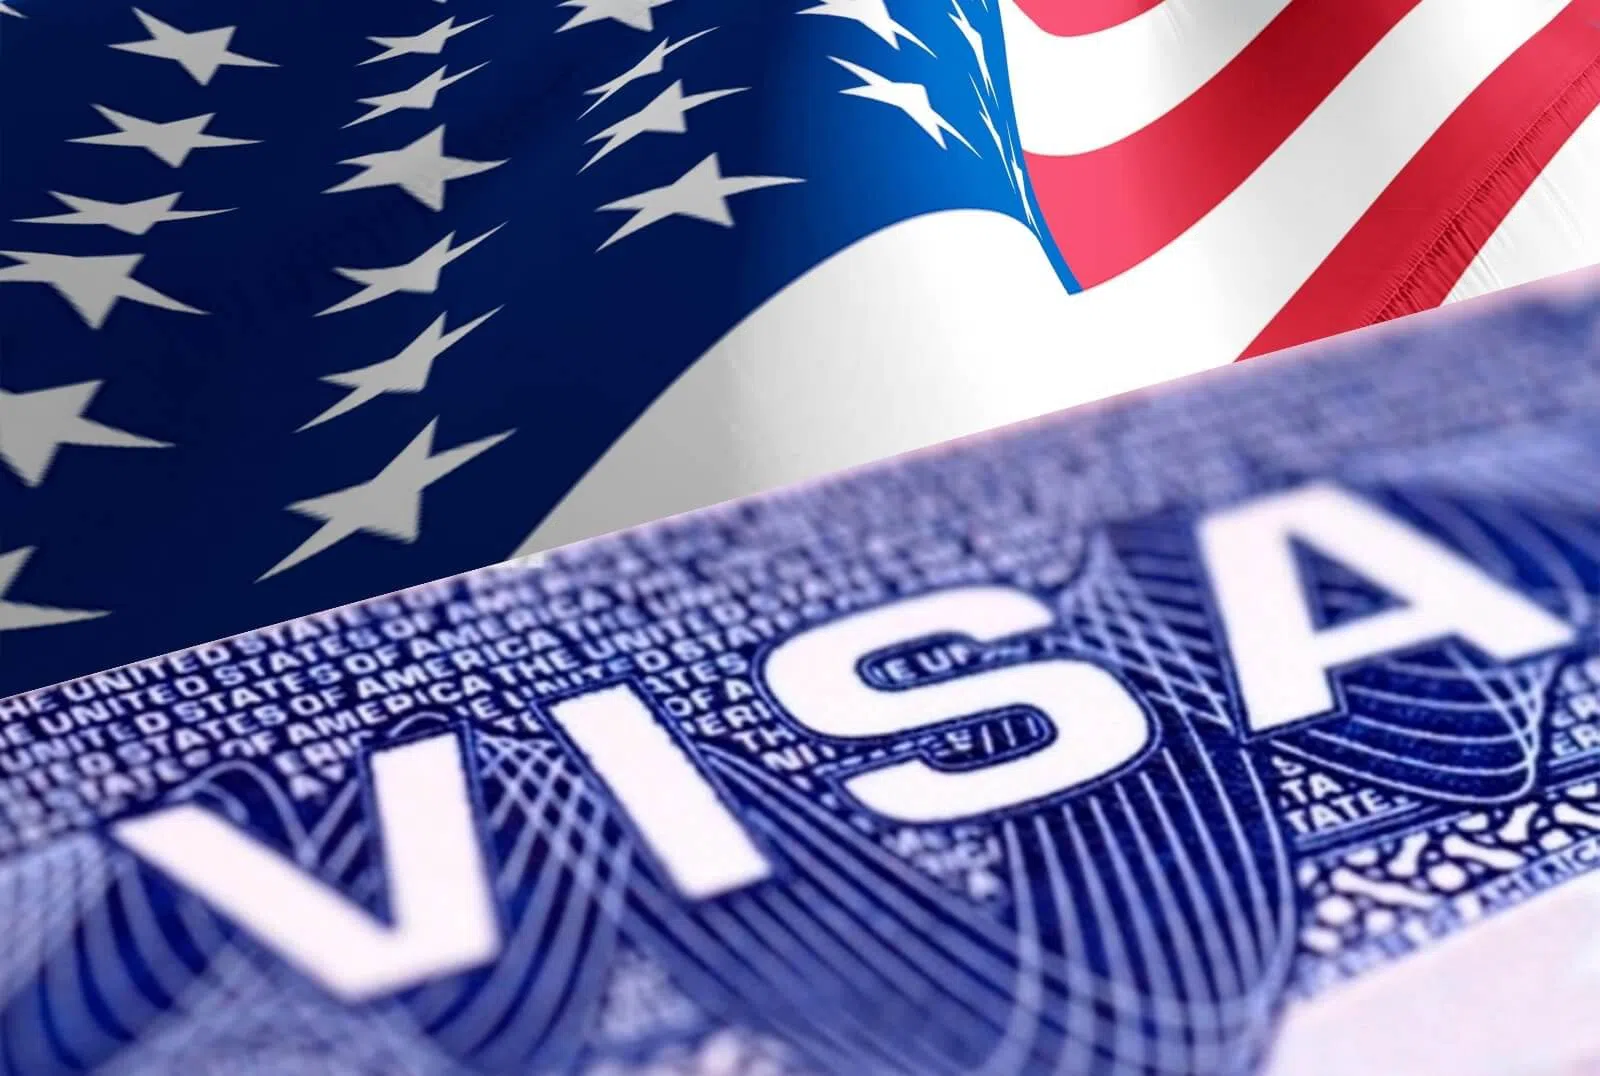 Mỹ đưa ra yêu cầu sau khi nhiều nước ngừng nhận hộ chiếu mới của Việt Nam